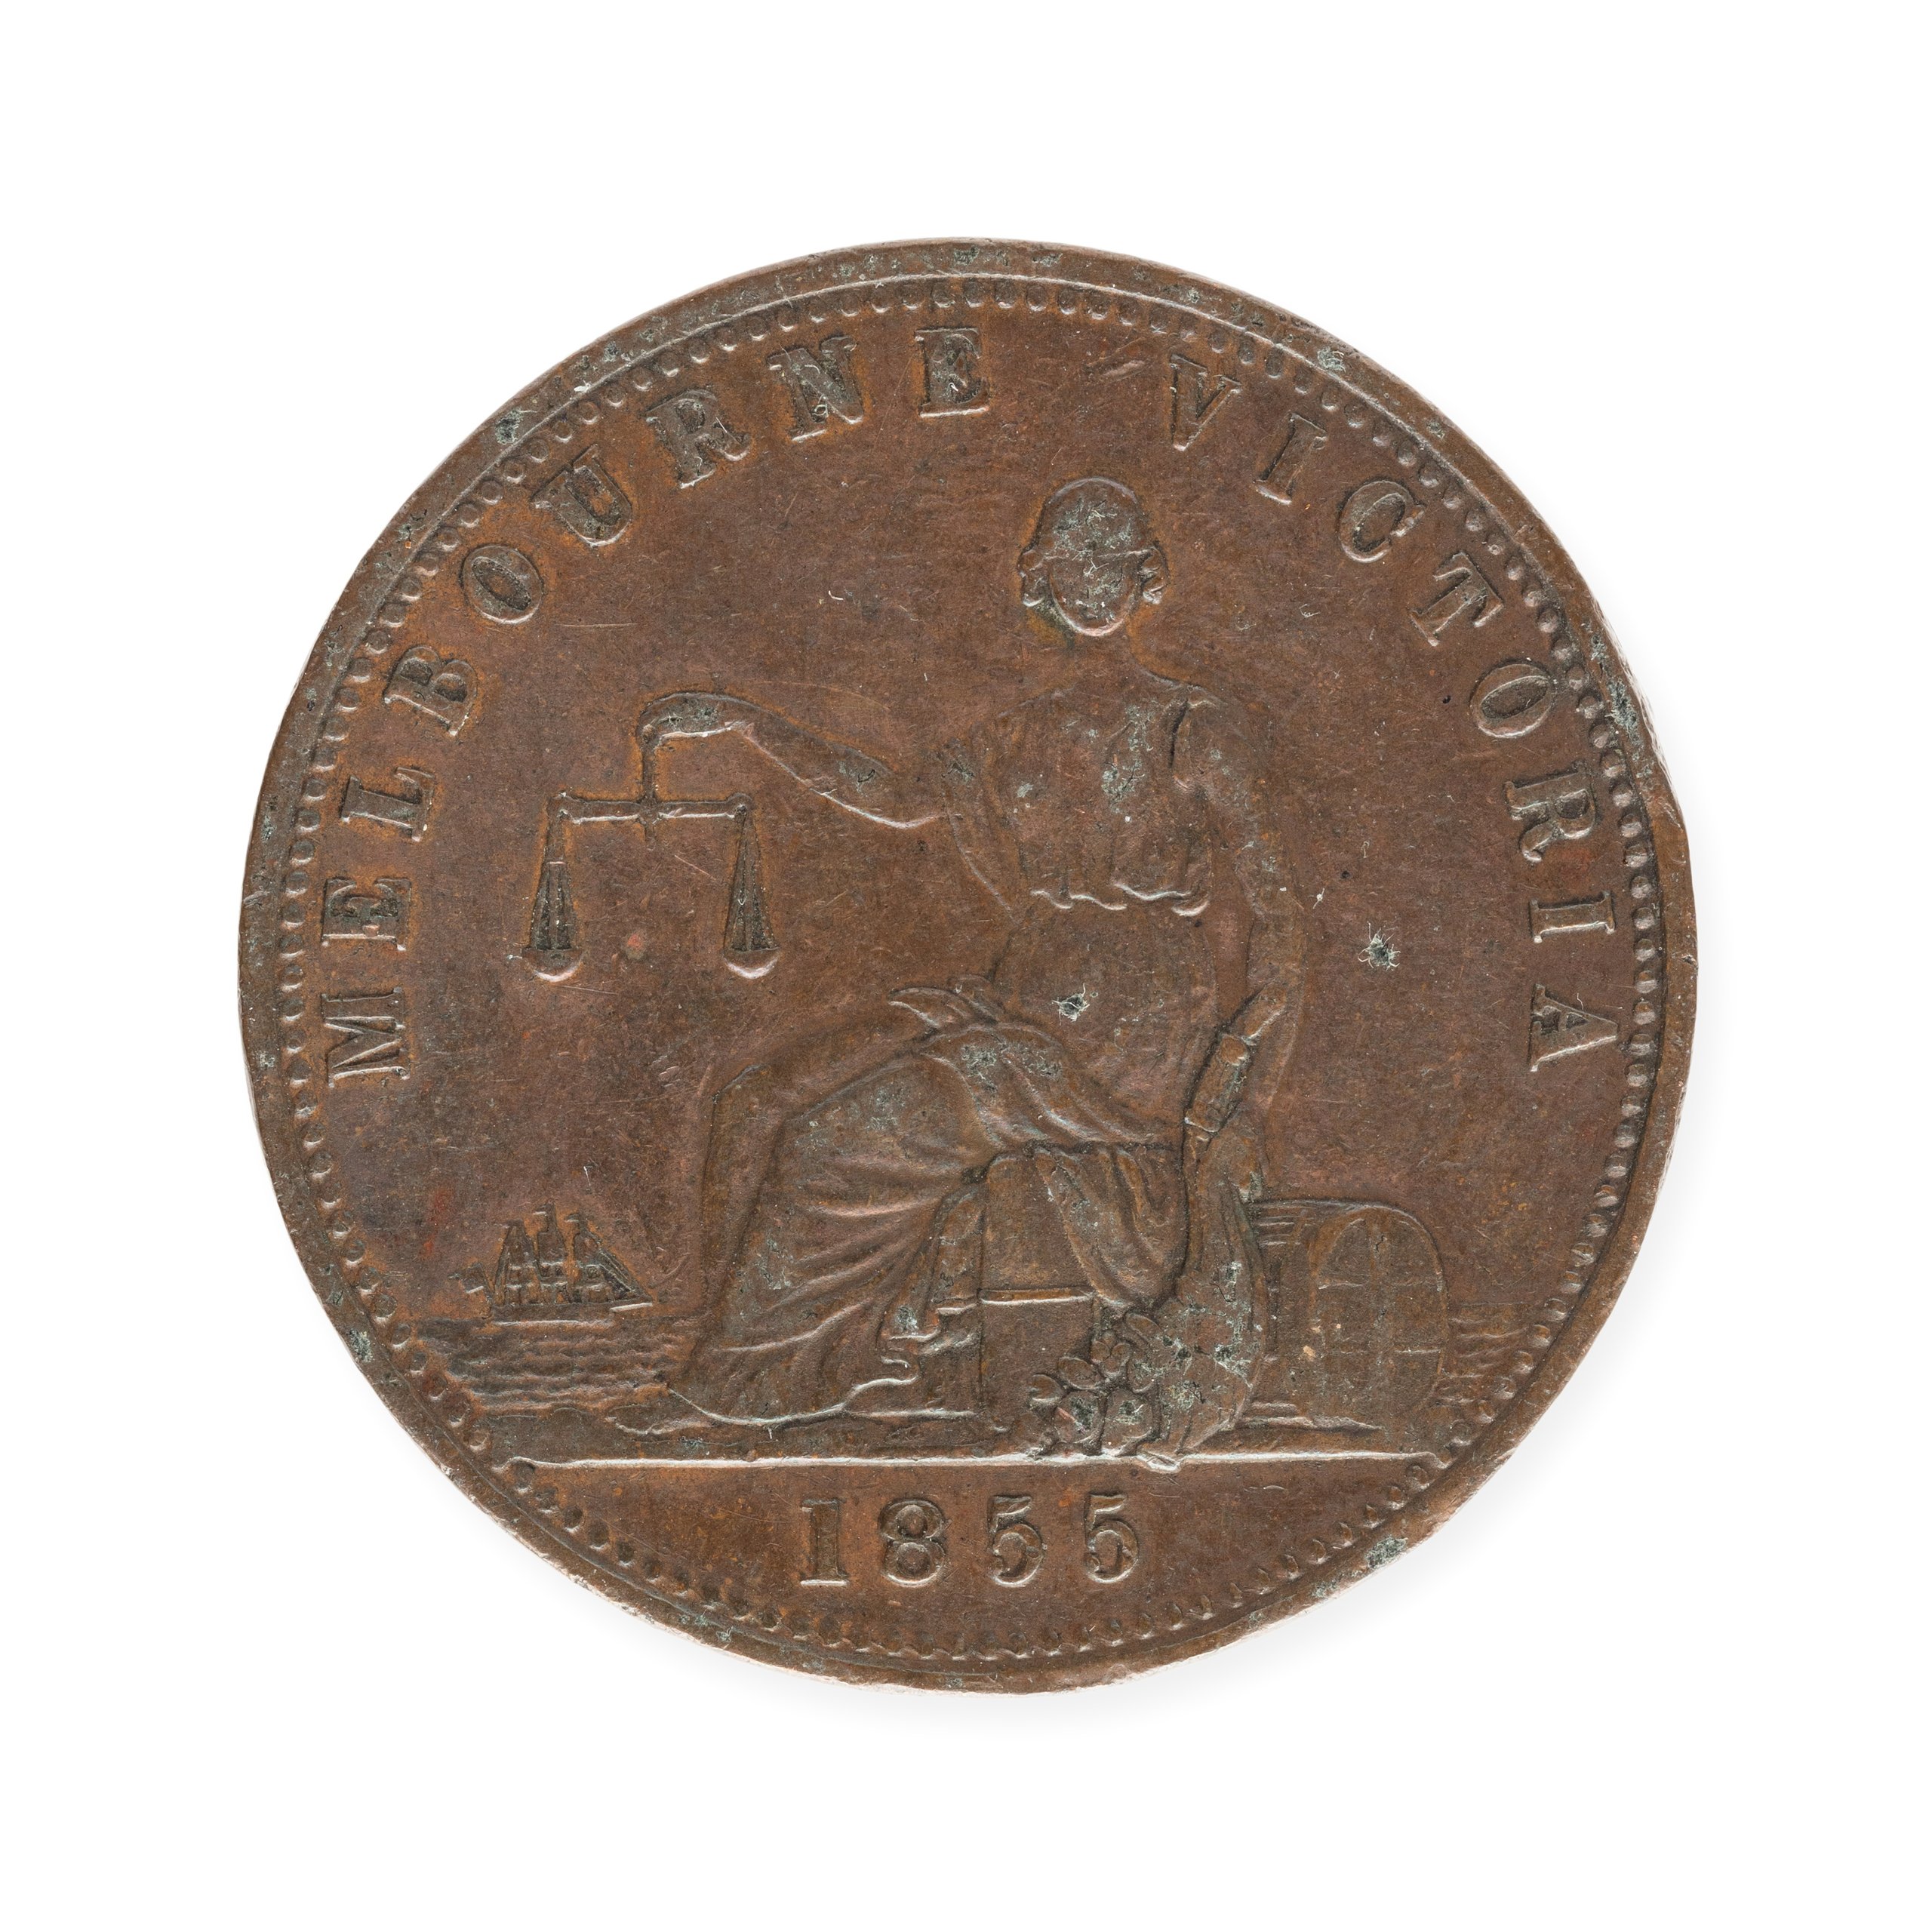 Australia penny token for E. De Carle & Co